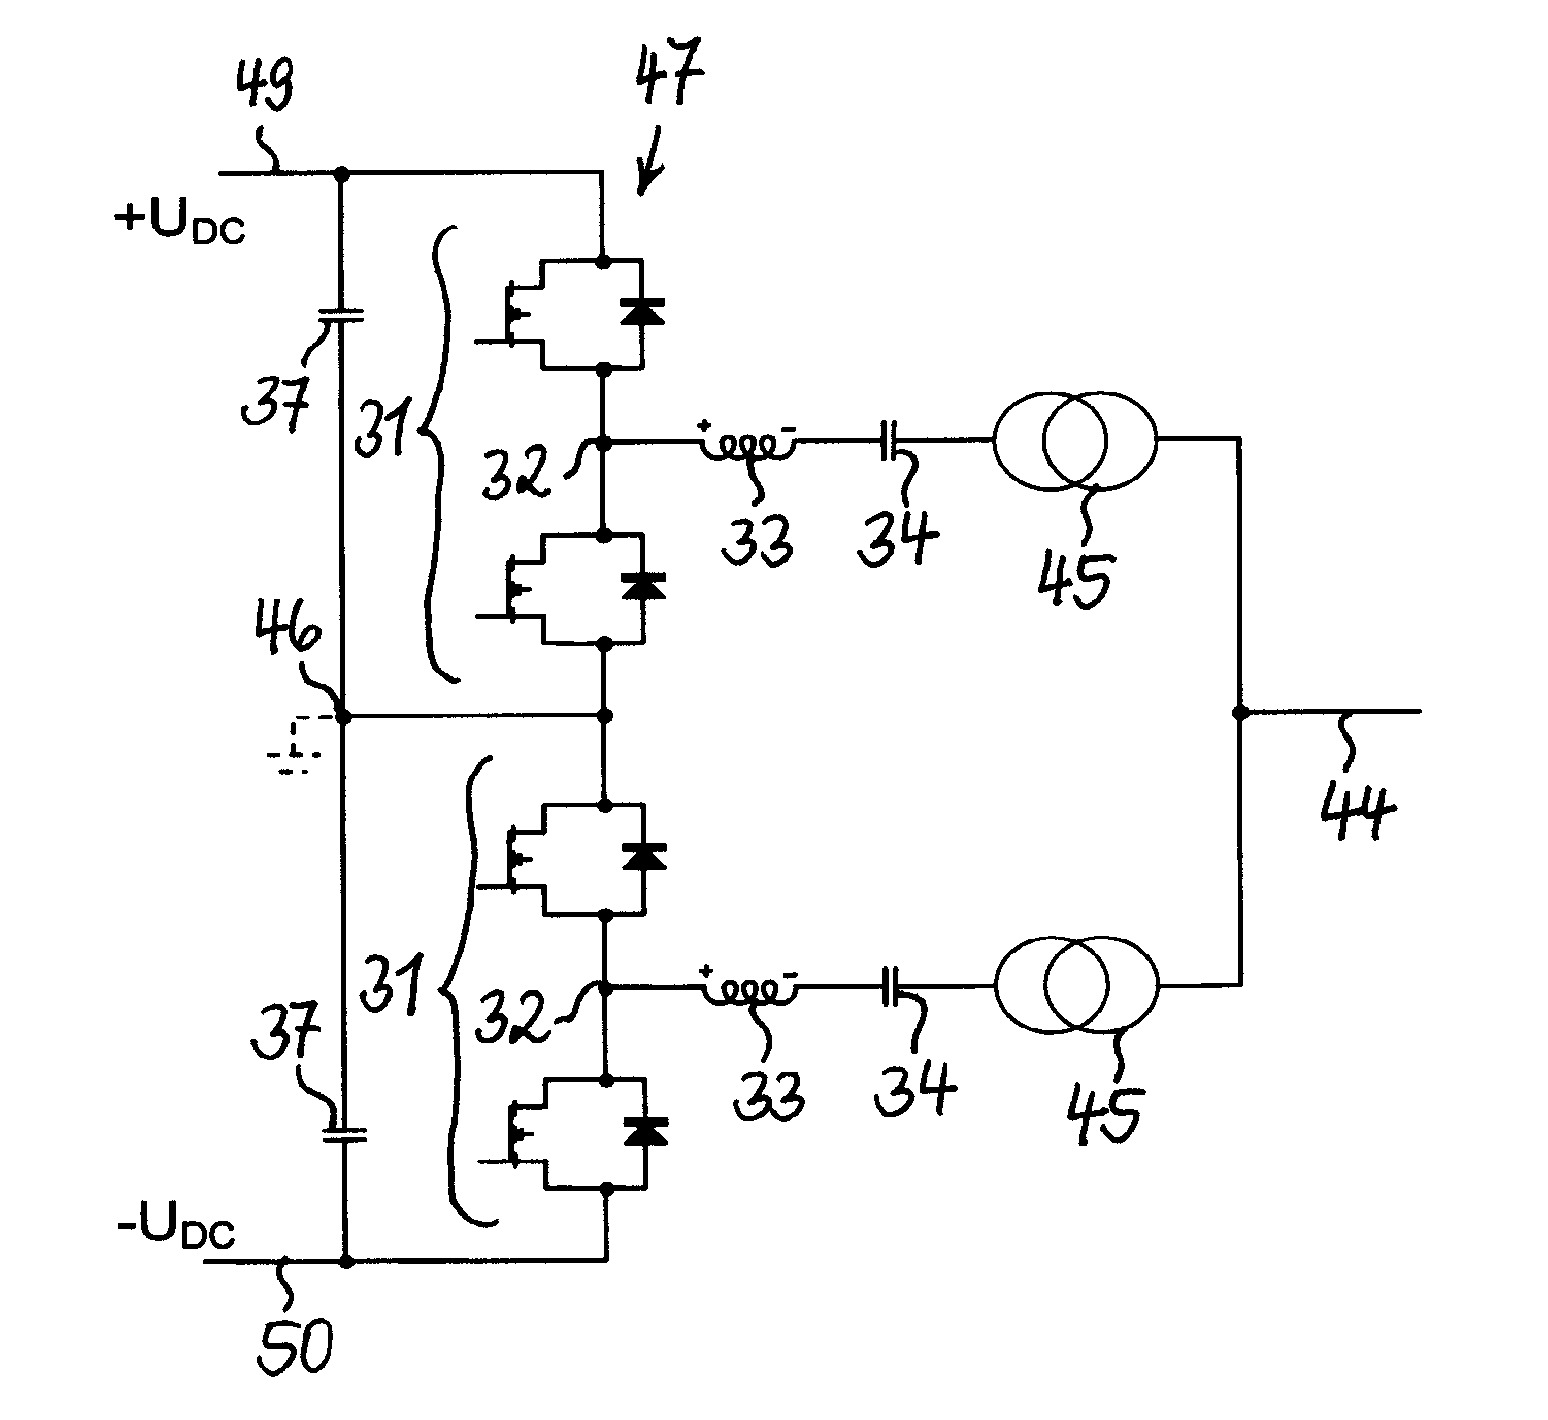 Voltage source converter for high voltage direct current power transmission